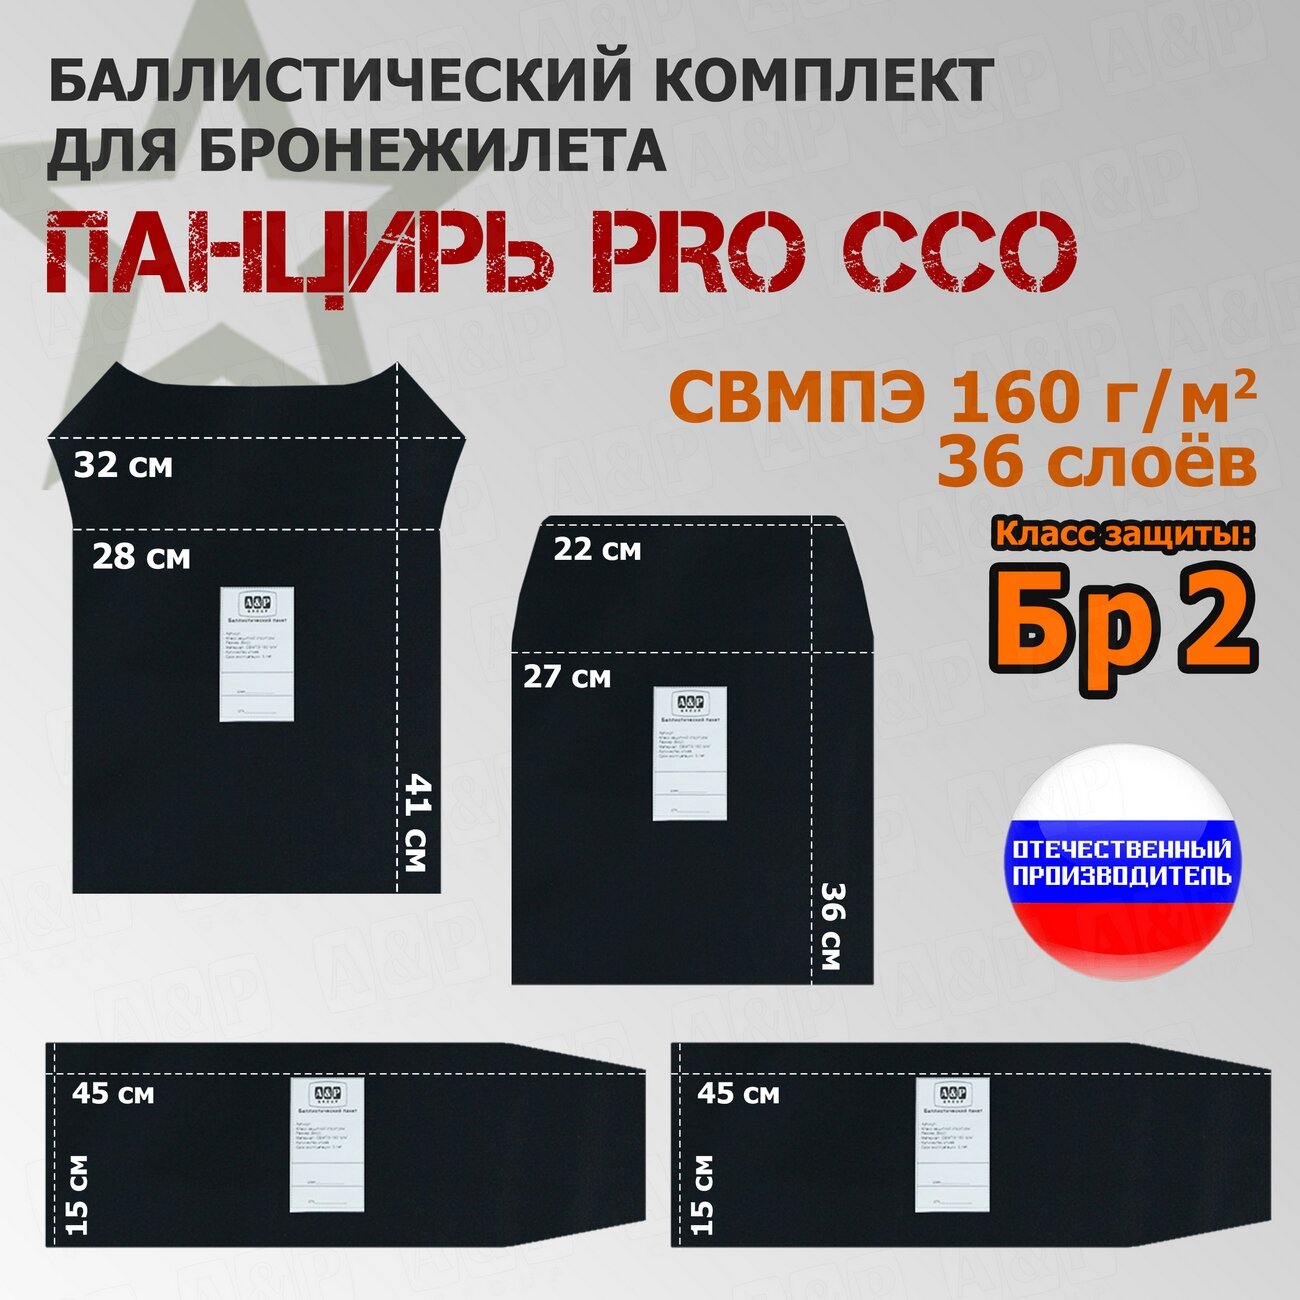 Комплект баллистических пакетов для плитника "Панцирь PRO" от ССО. Класс защитной структуры Бр 2.